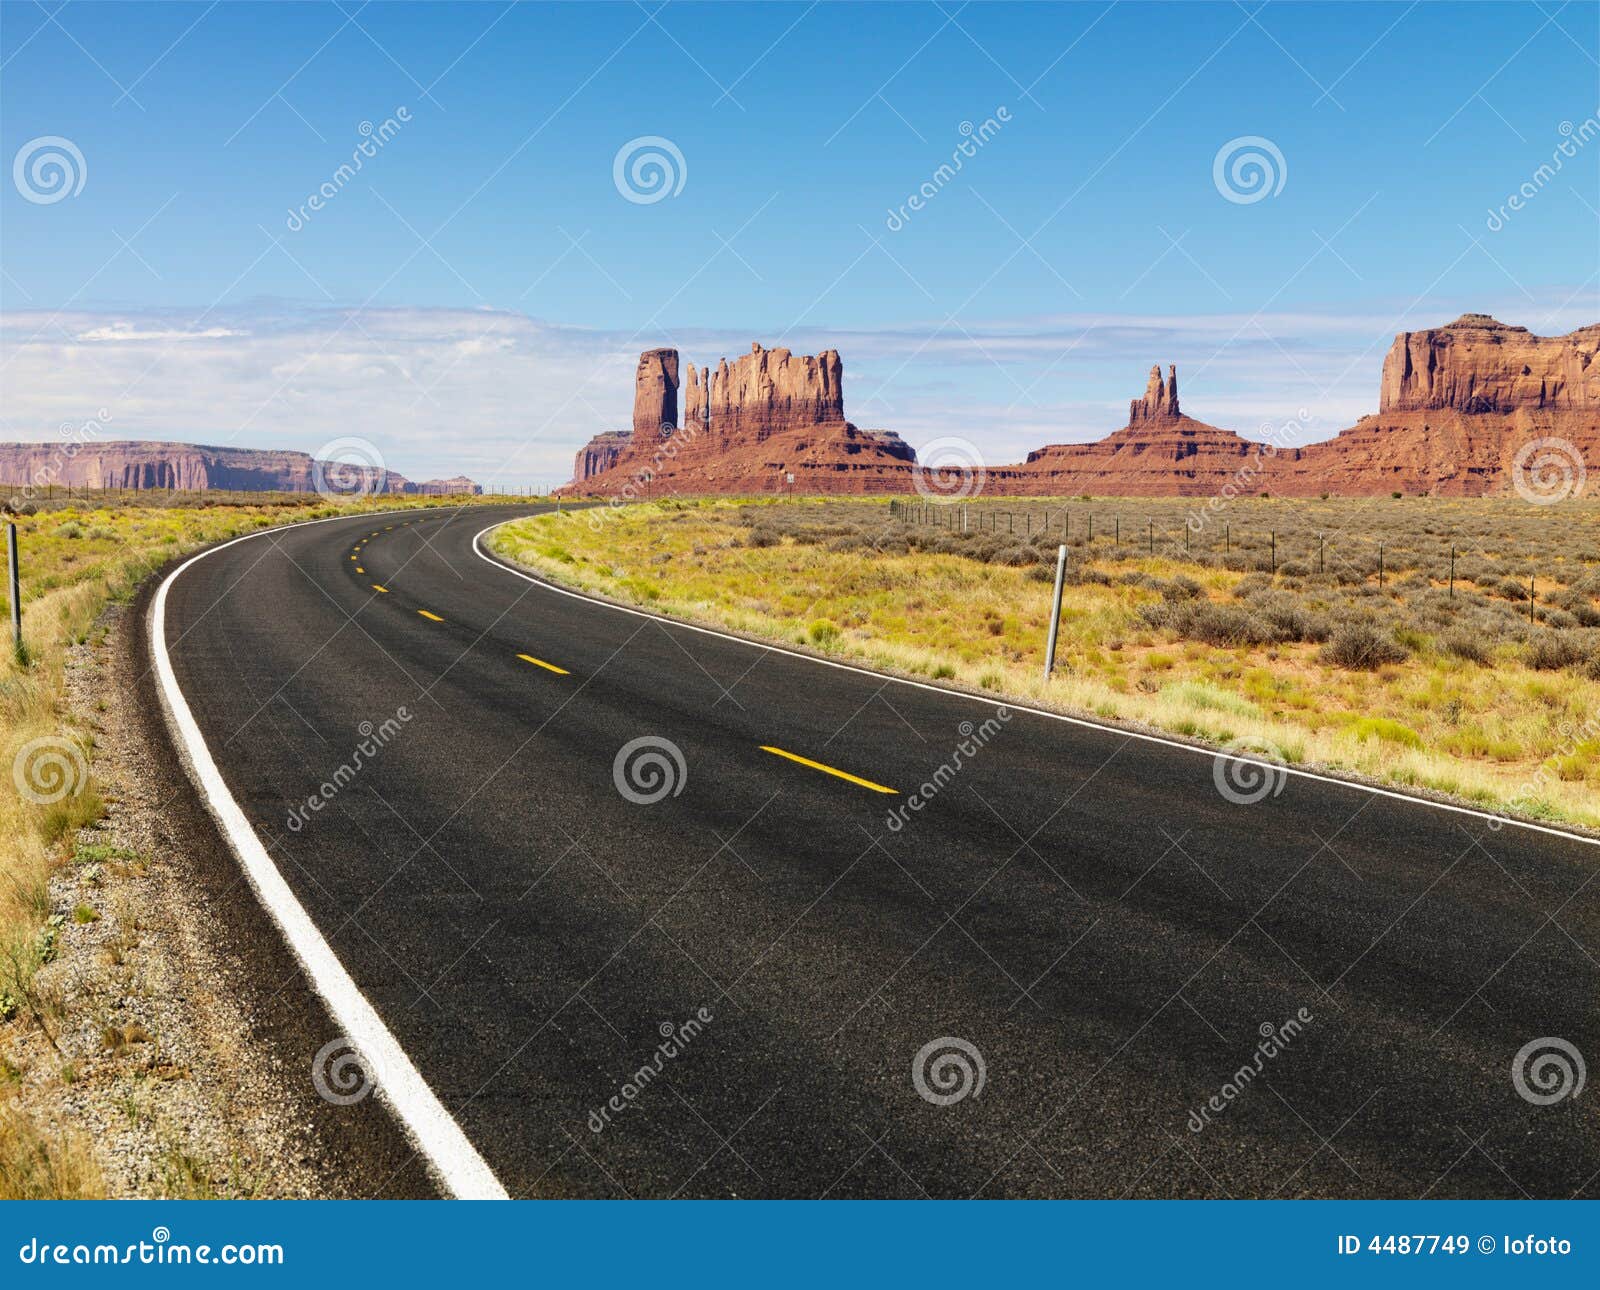 desert mesa and road.